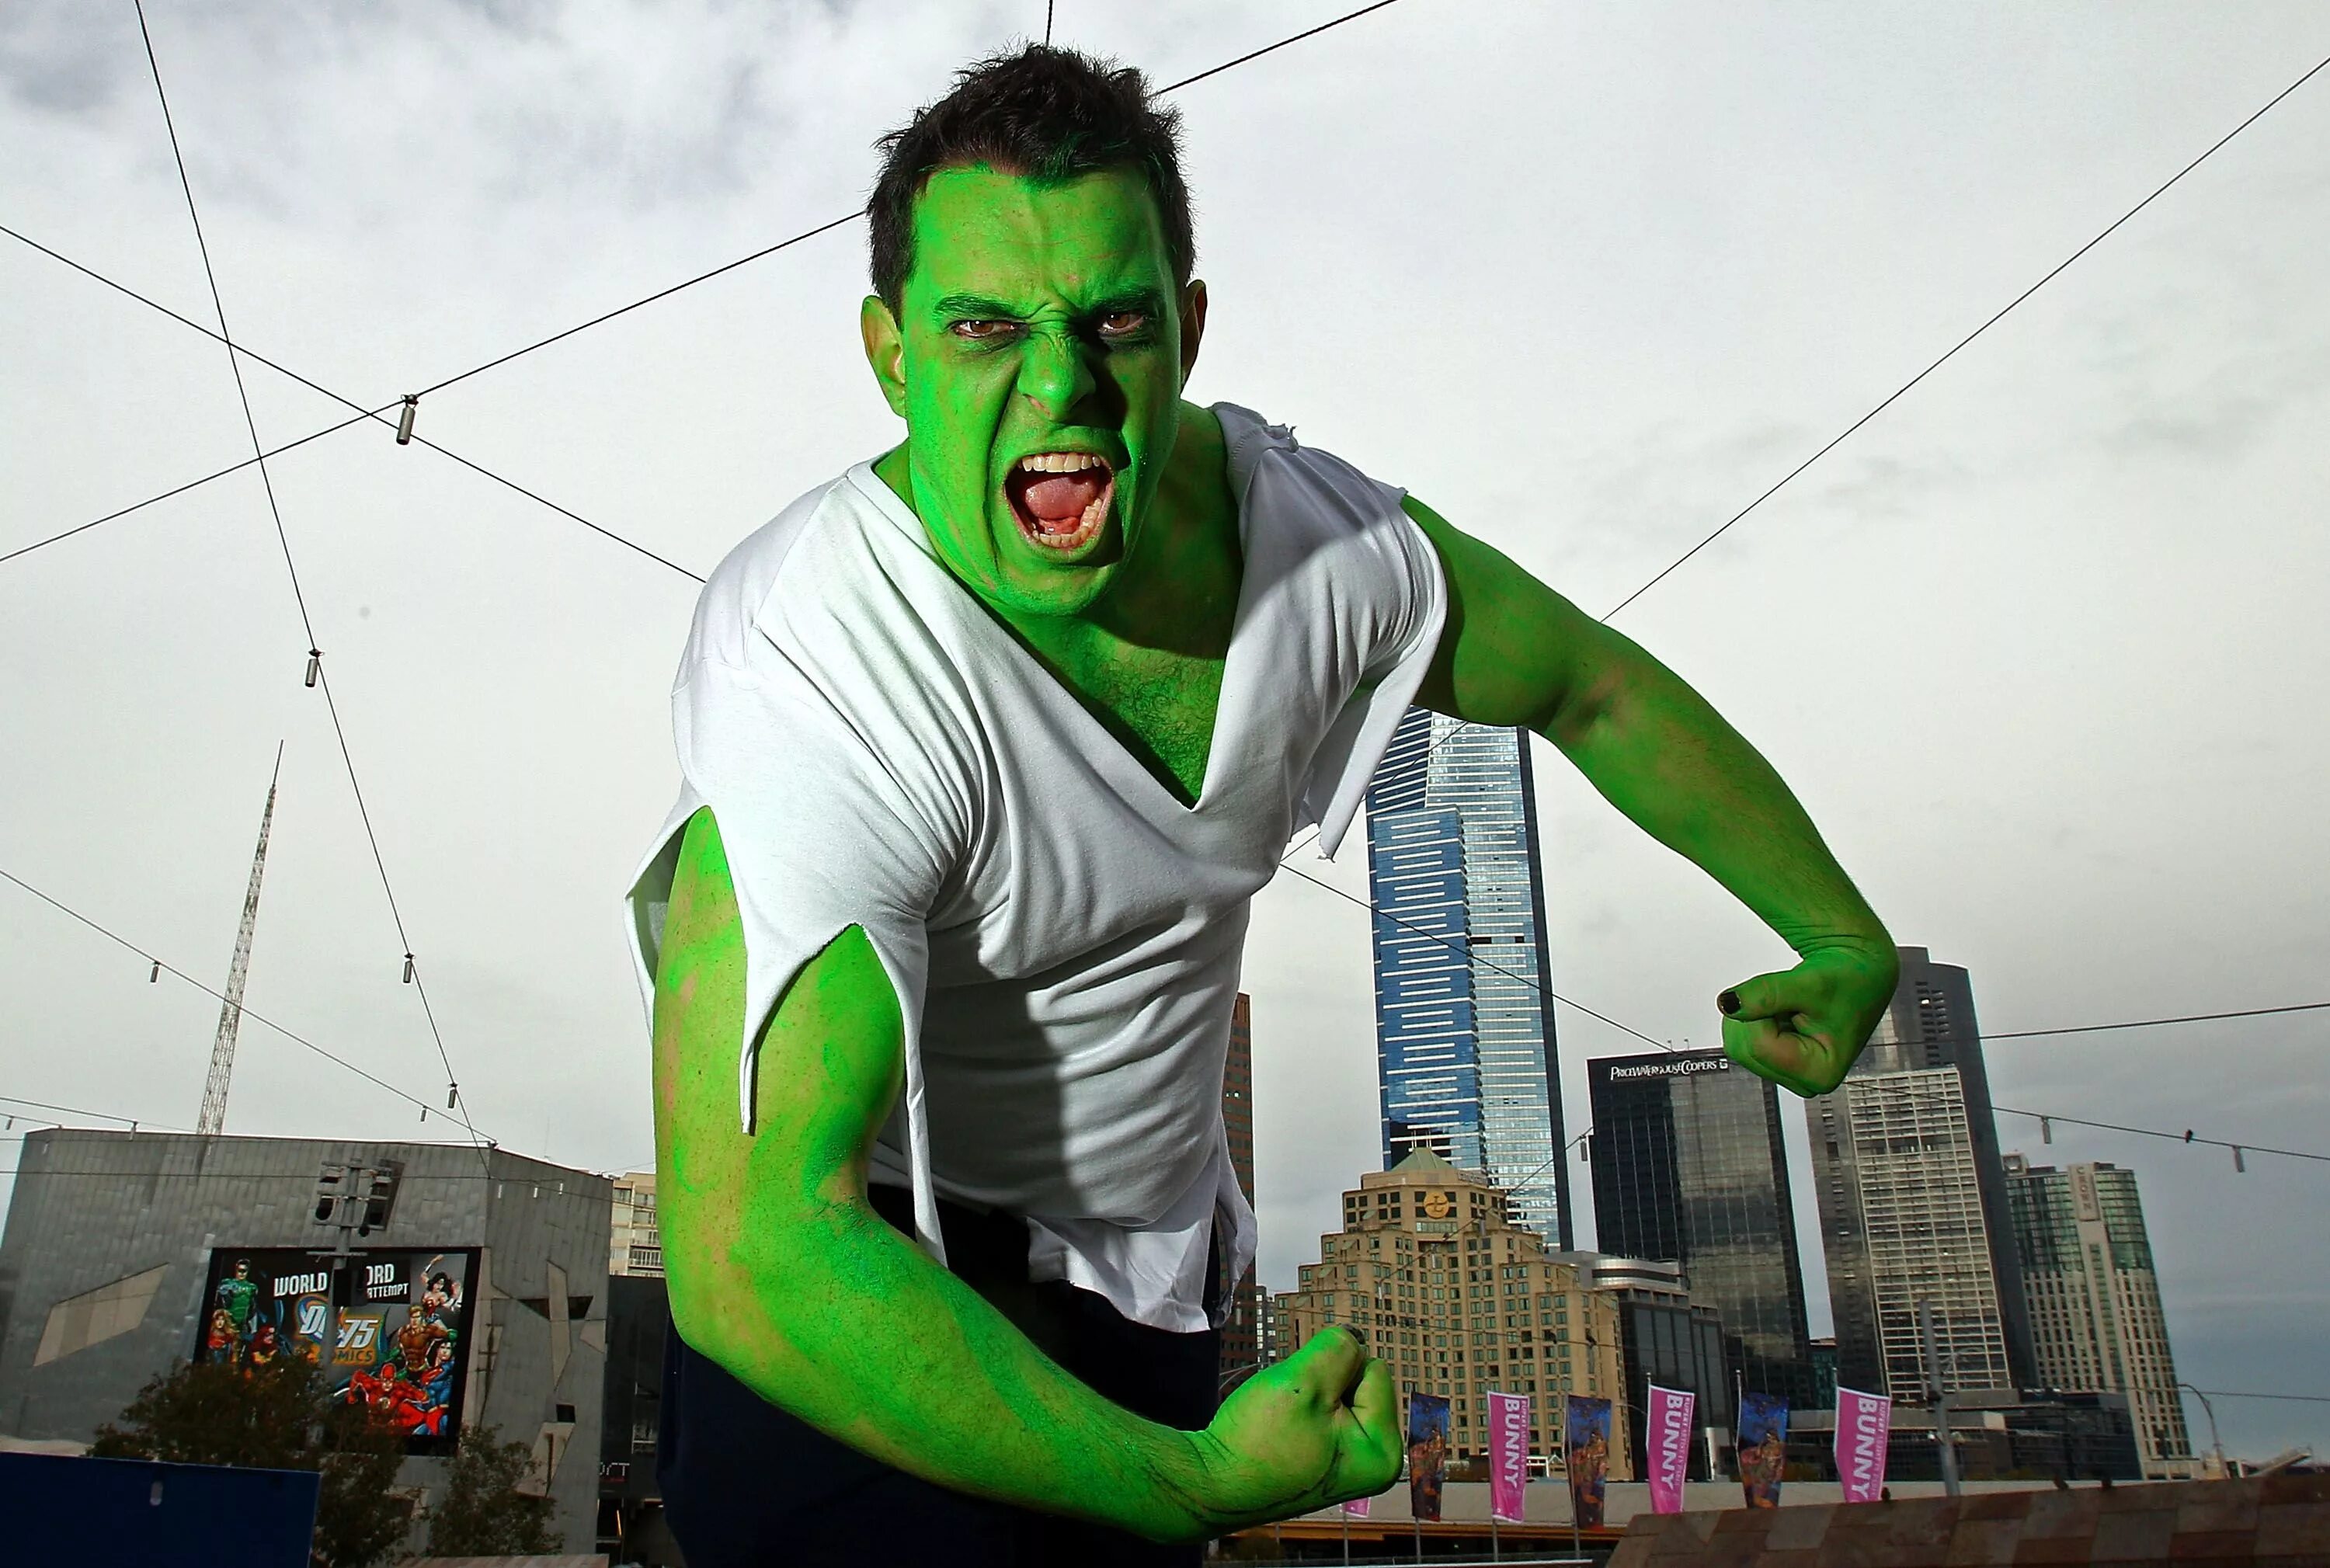 Зеленый человек. Человек в зеленом костюме. Супергерои в реальной жизни. Необычный Супергерой. Семь зеленых людей